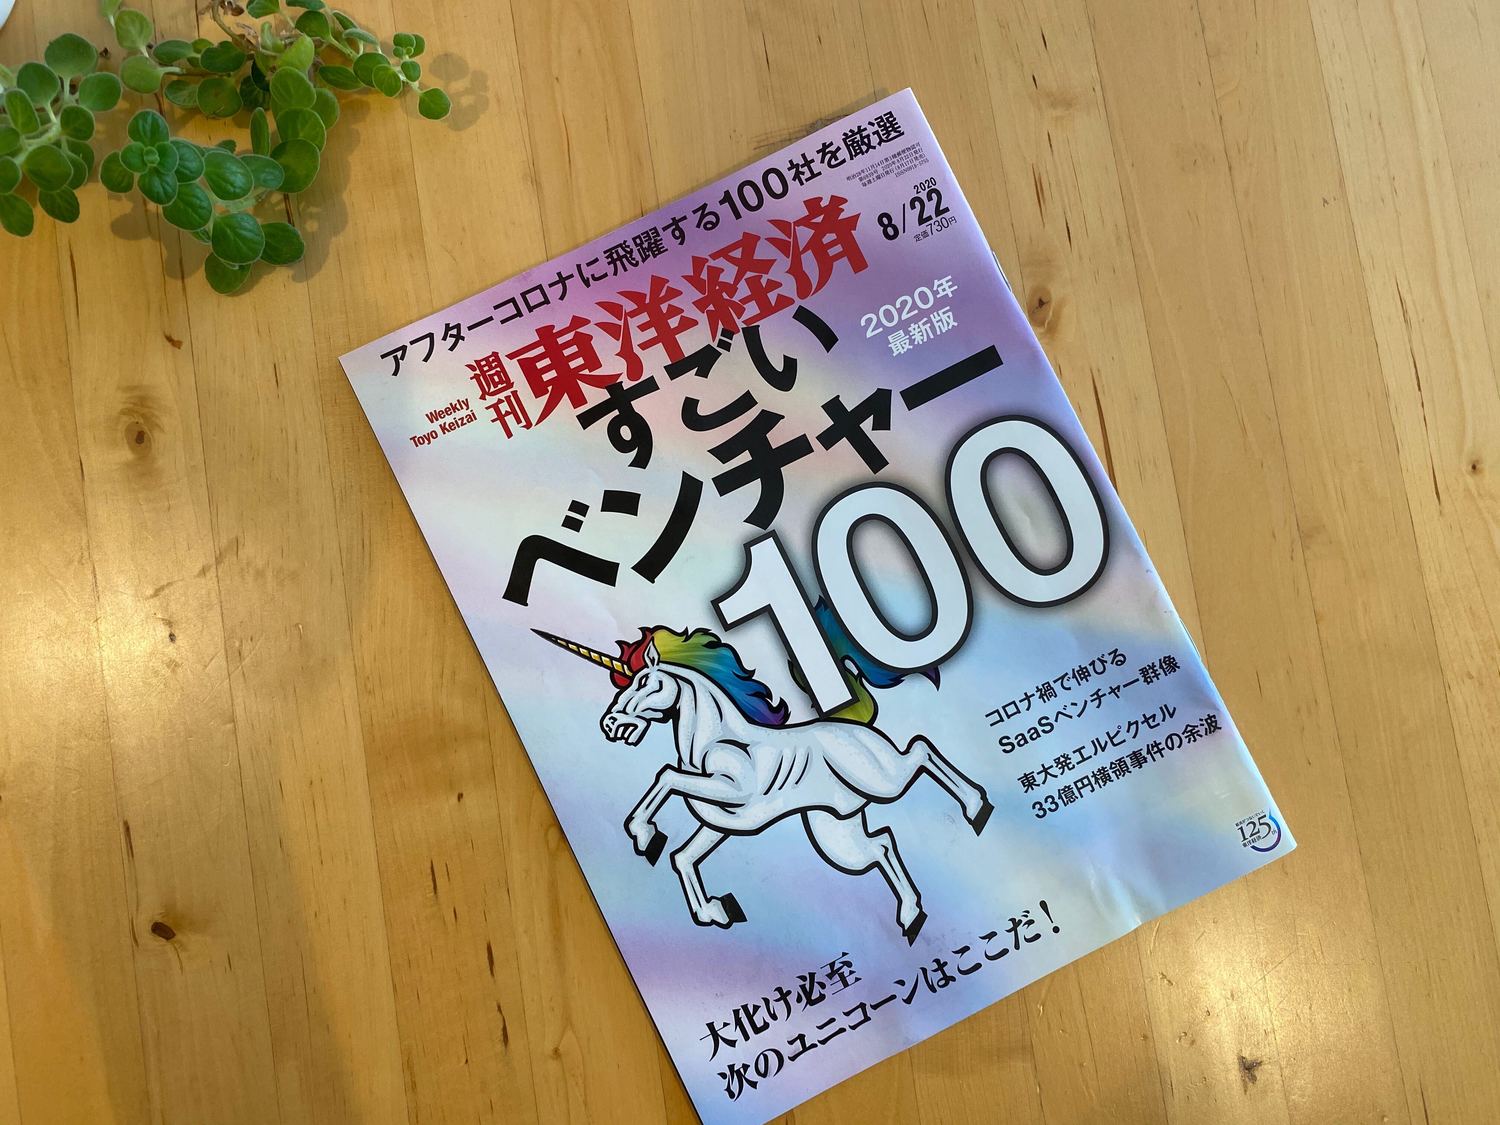 「雑誌『週刊東洋経済』の特集「すごいベンチャー100」に選定されました。」のサムネイル画像